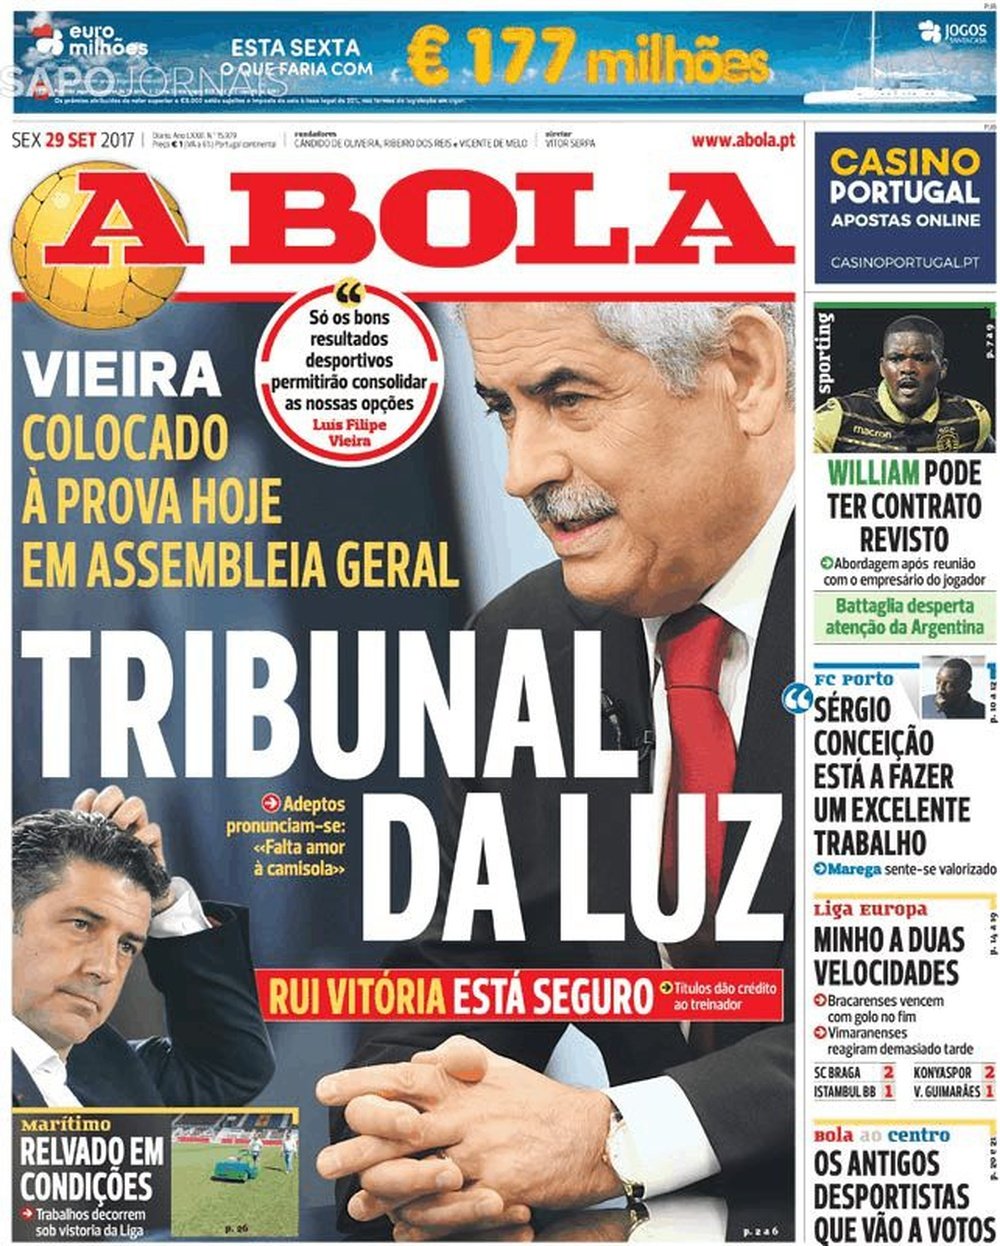 Capa do jornal 'A Bola', 29-09-2017. A Bola